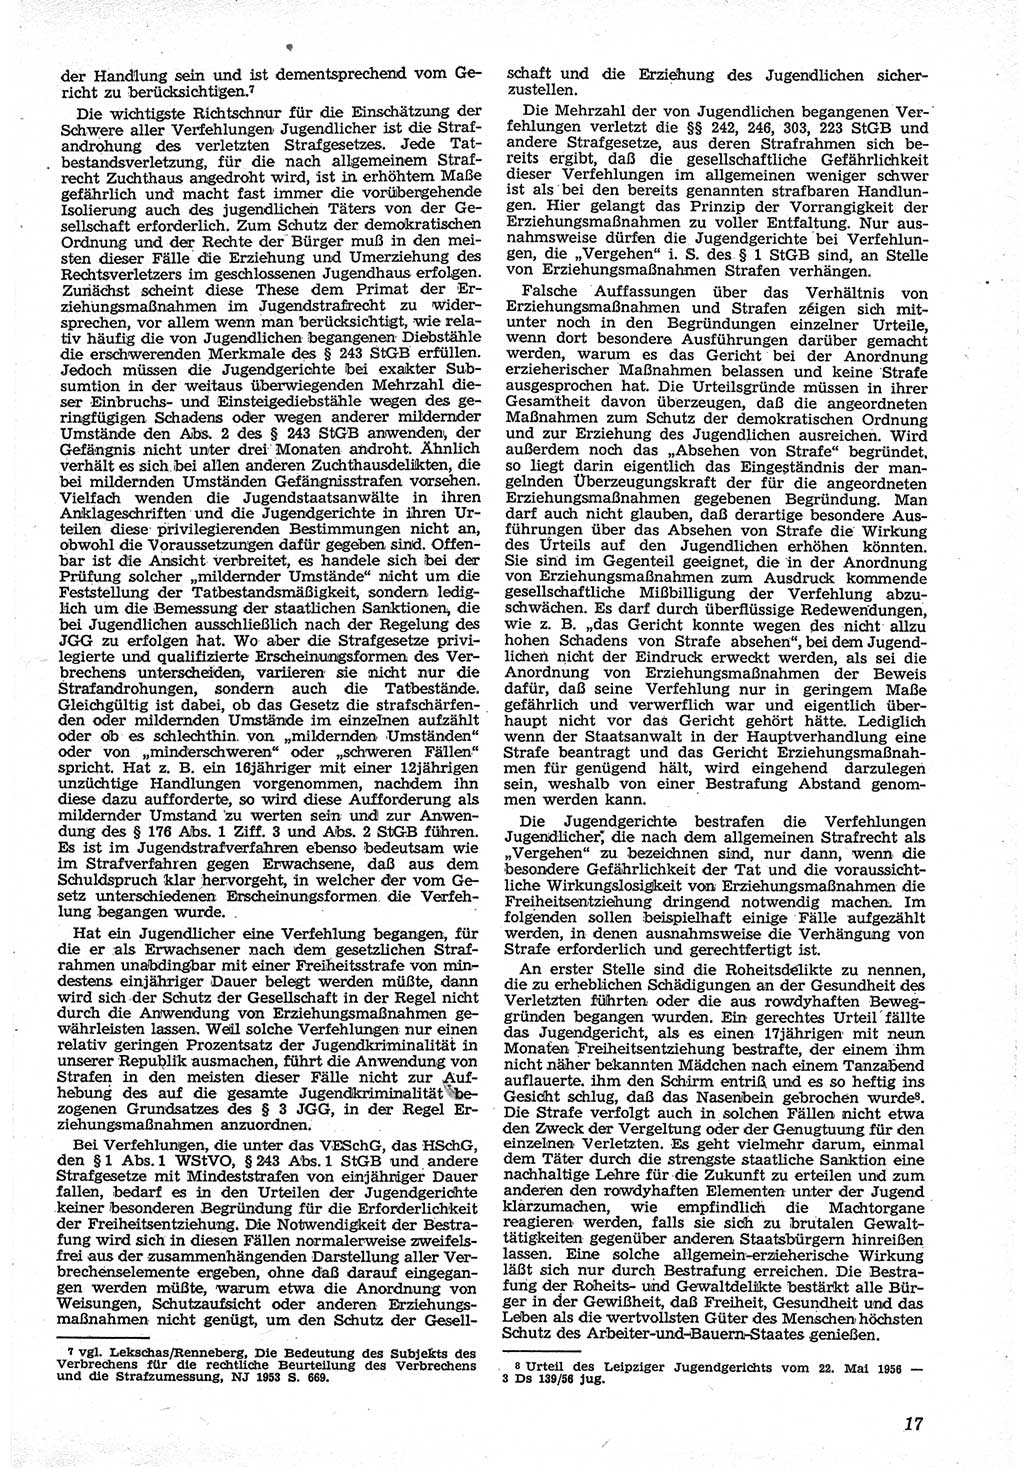 Neue Justiz (NJ), Zeitschrift für Recht und Rechtswissenschaft [Deutsche Demokratische Republik (DDR)], 12. Jahrgang 1958, Seite 17 (NJ DDR 1958, S. 17)